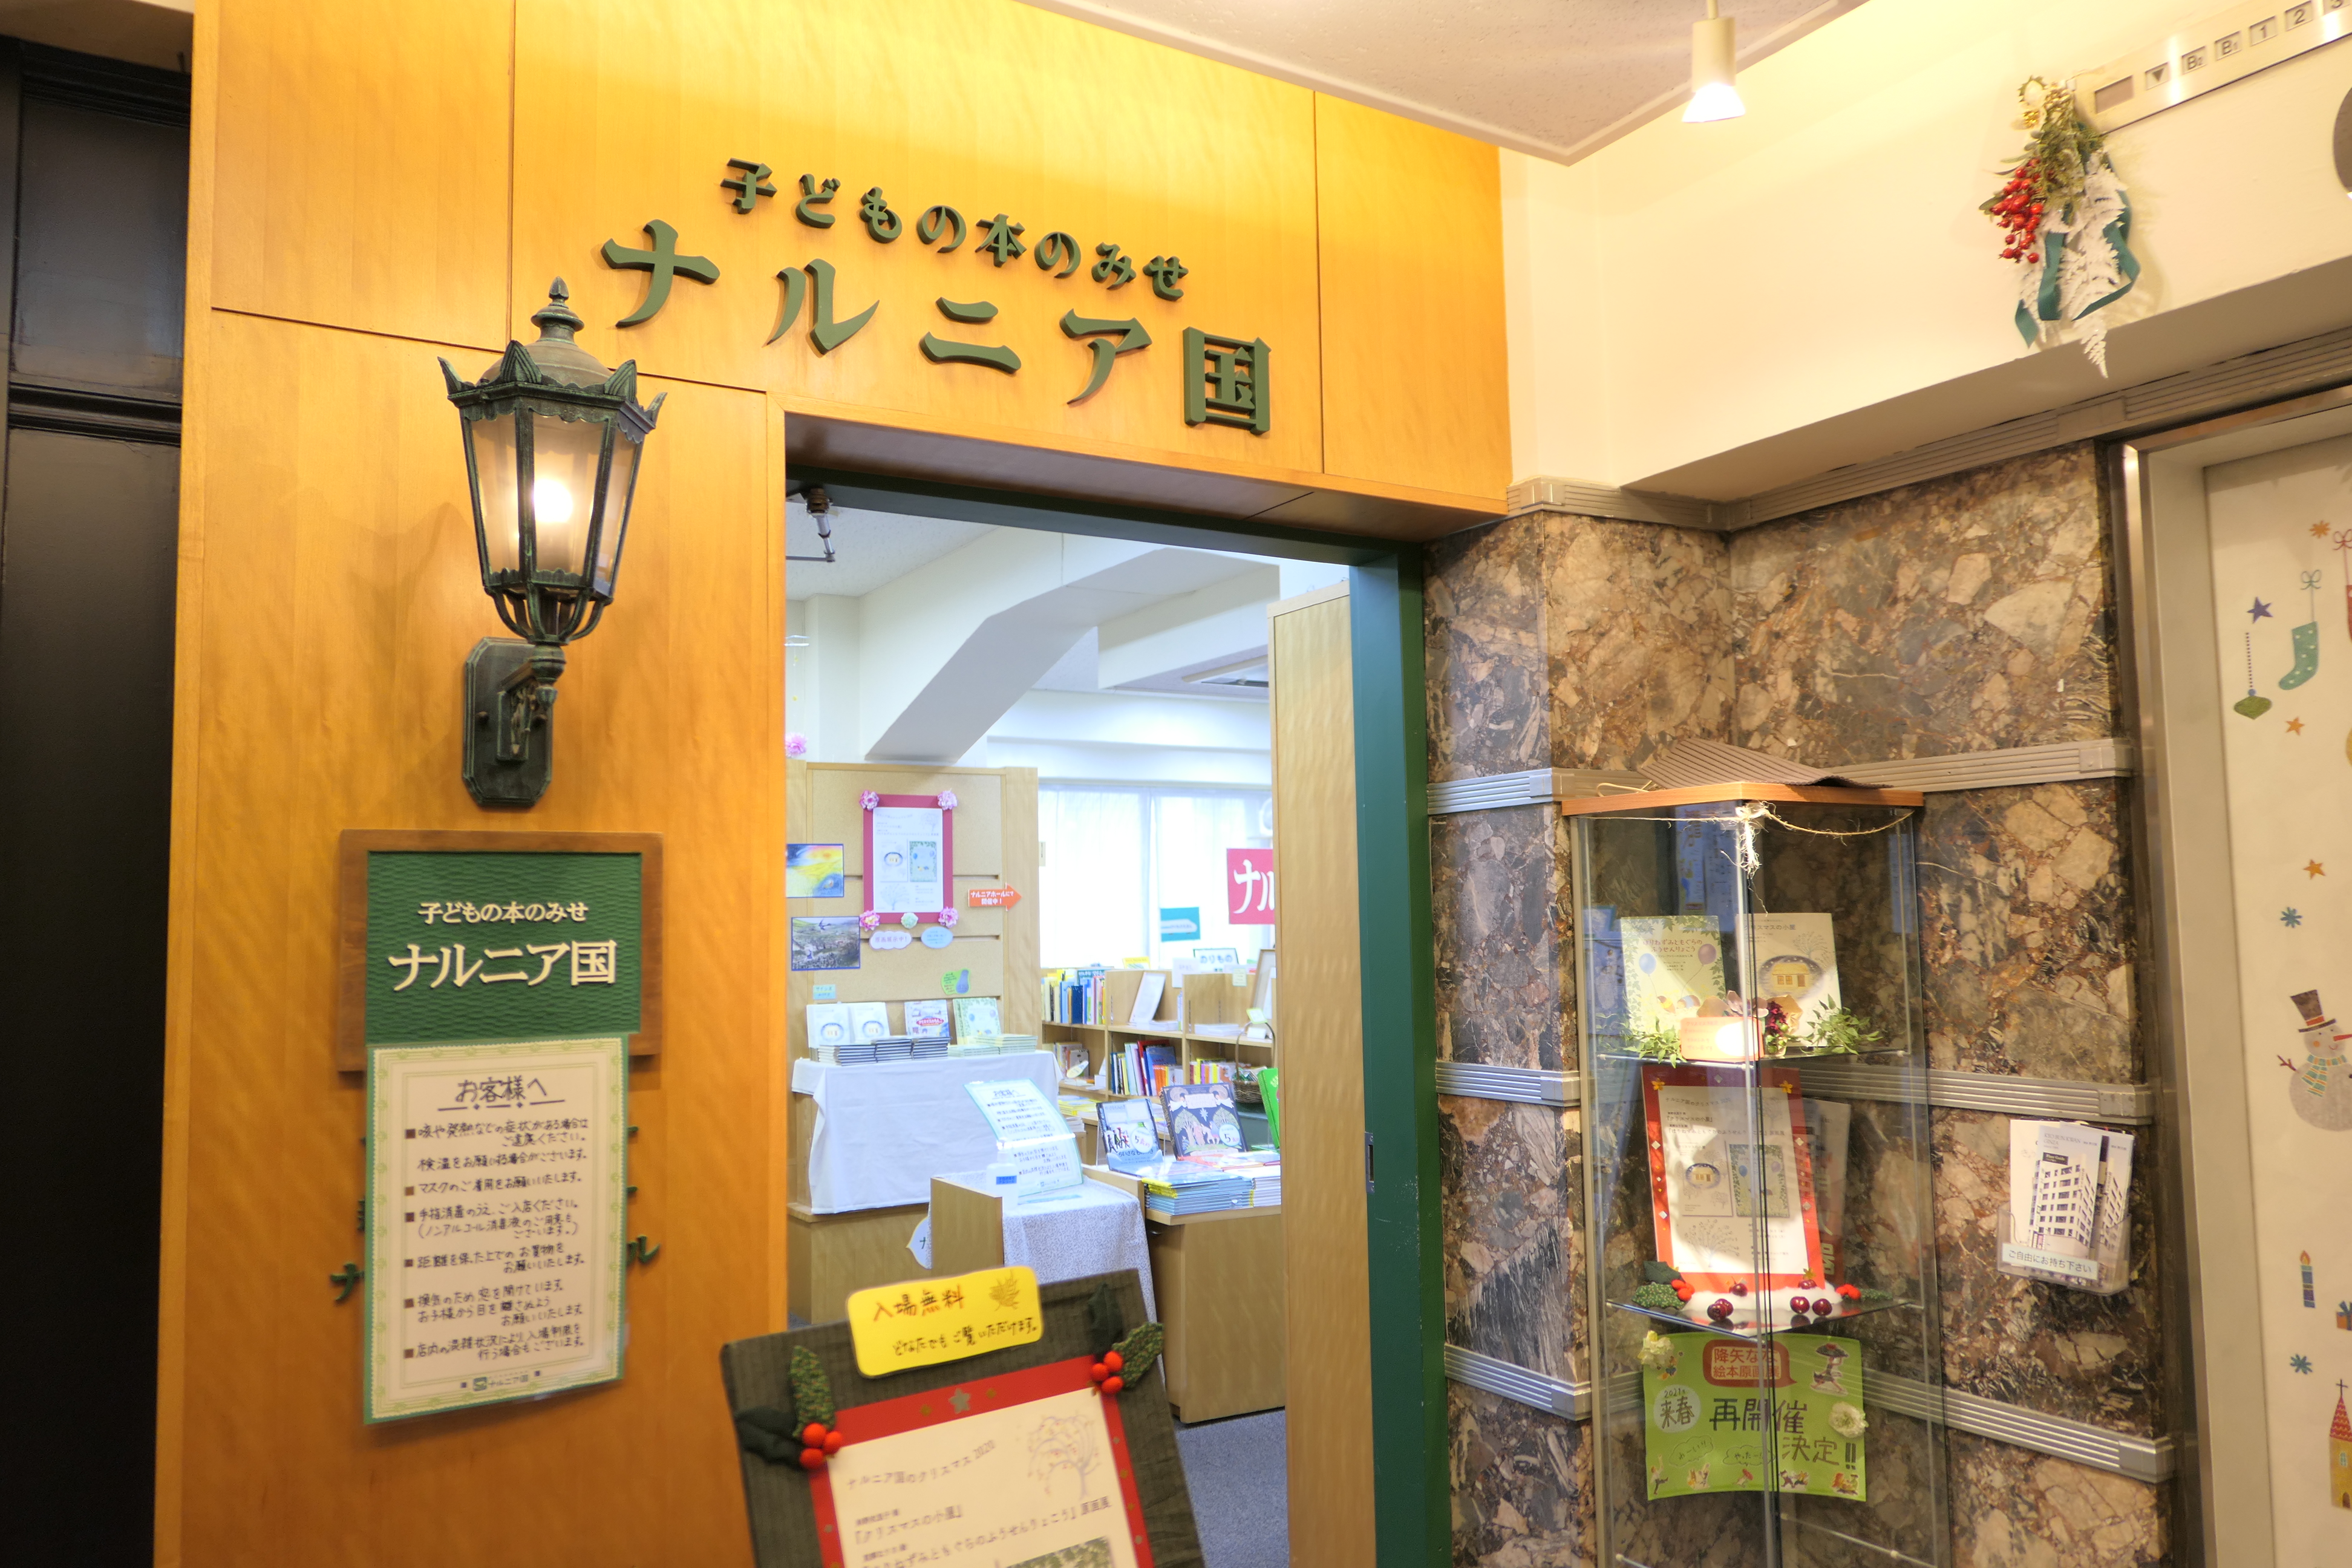 【大人におすすめ】オシャレで可愛い絵本のある人気の本屋まとめ【東京】